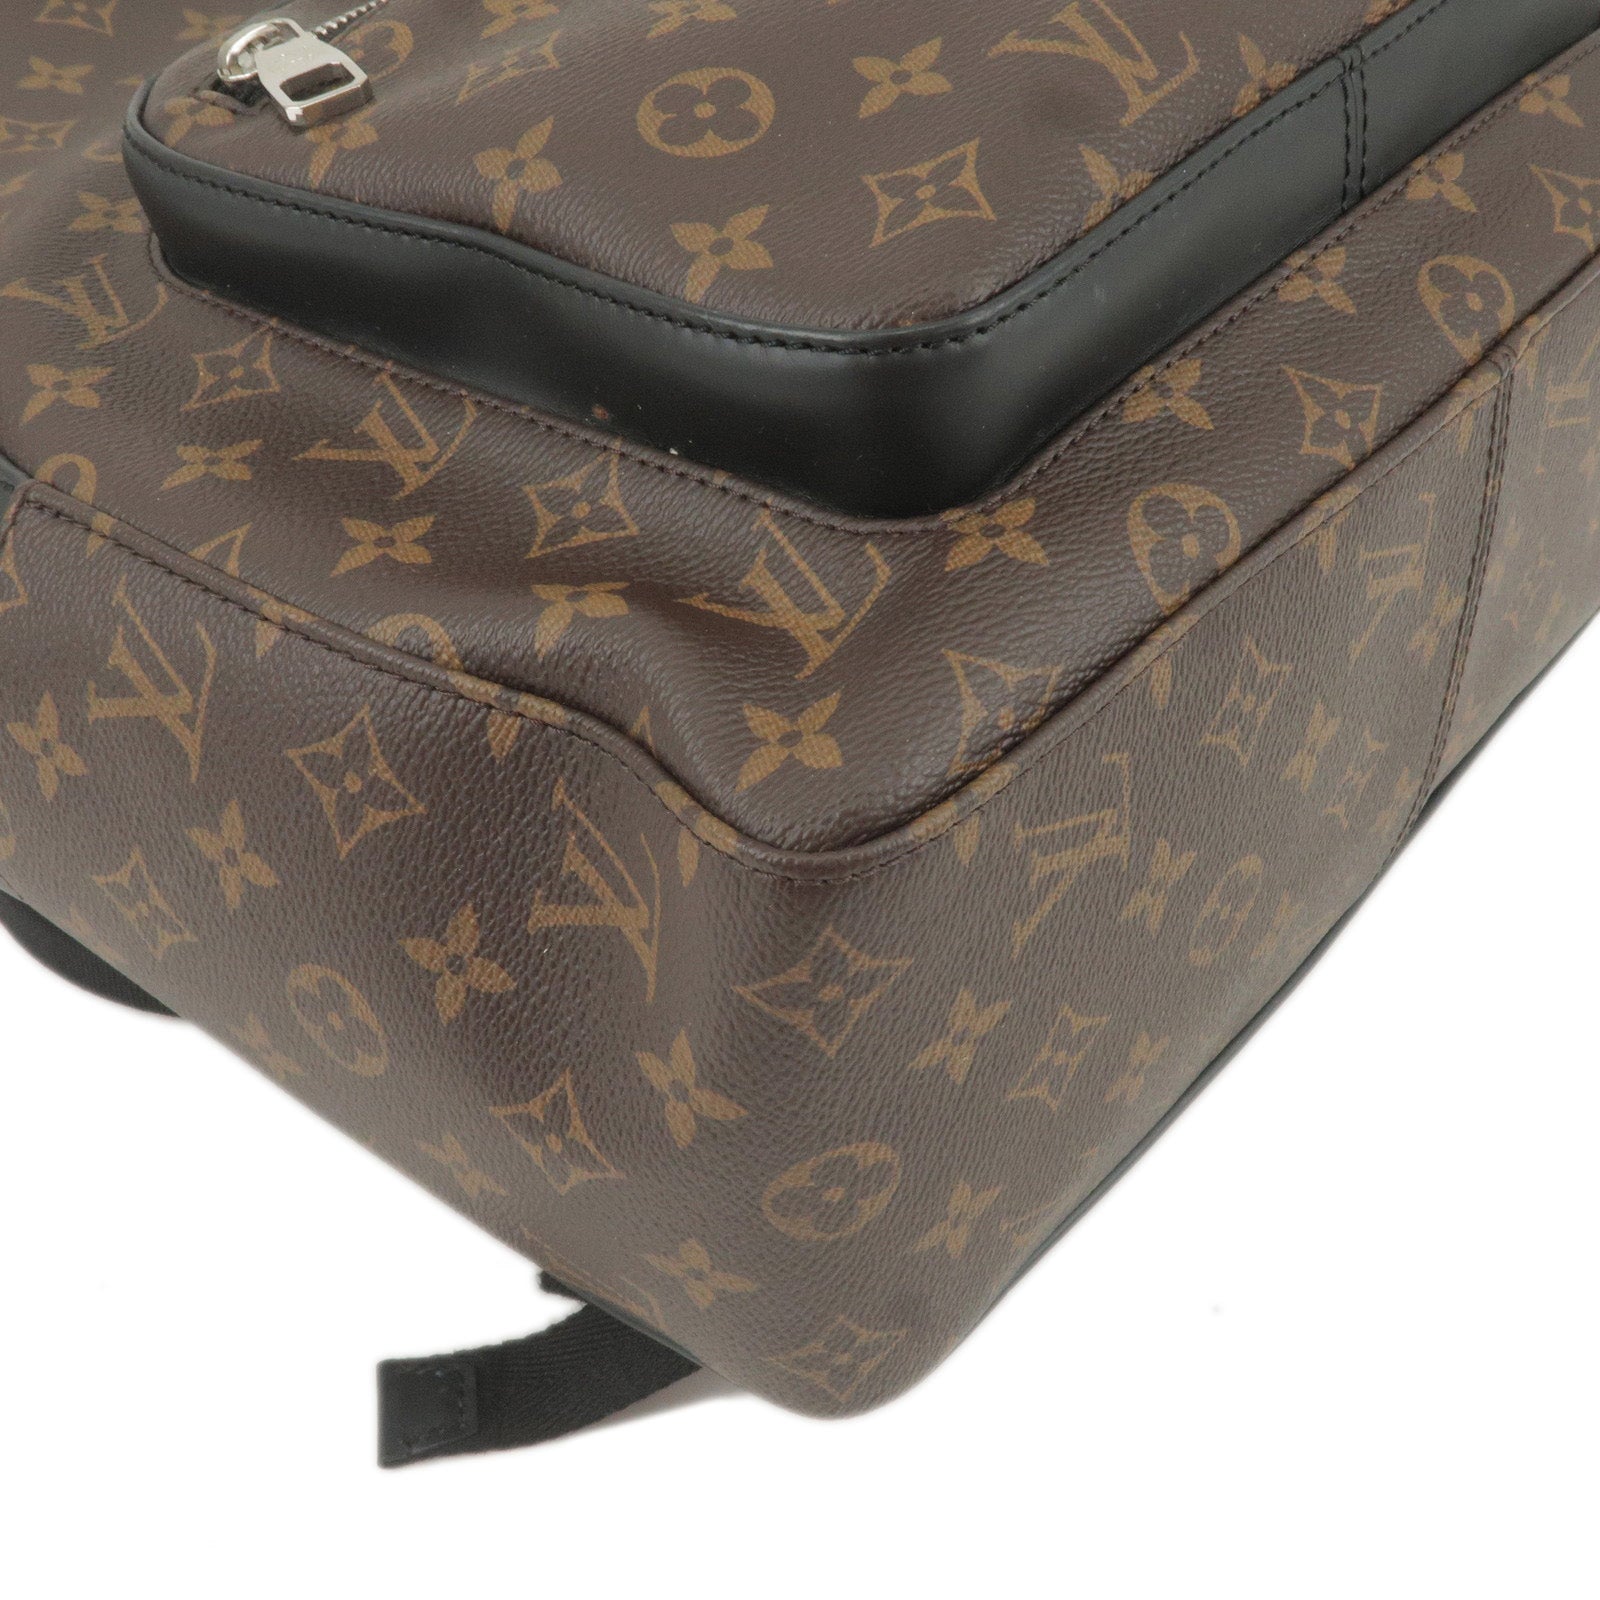 Louis Vuitton Monogram Canvas Bisten 80 Handbag